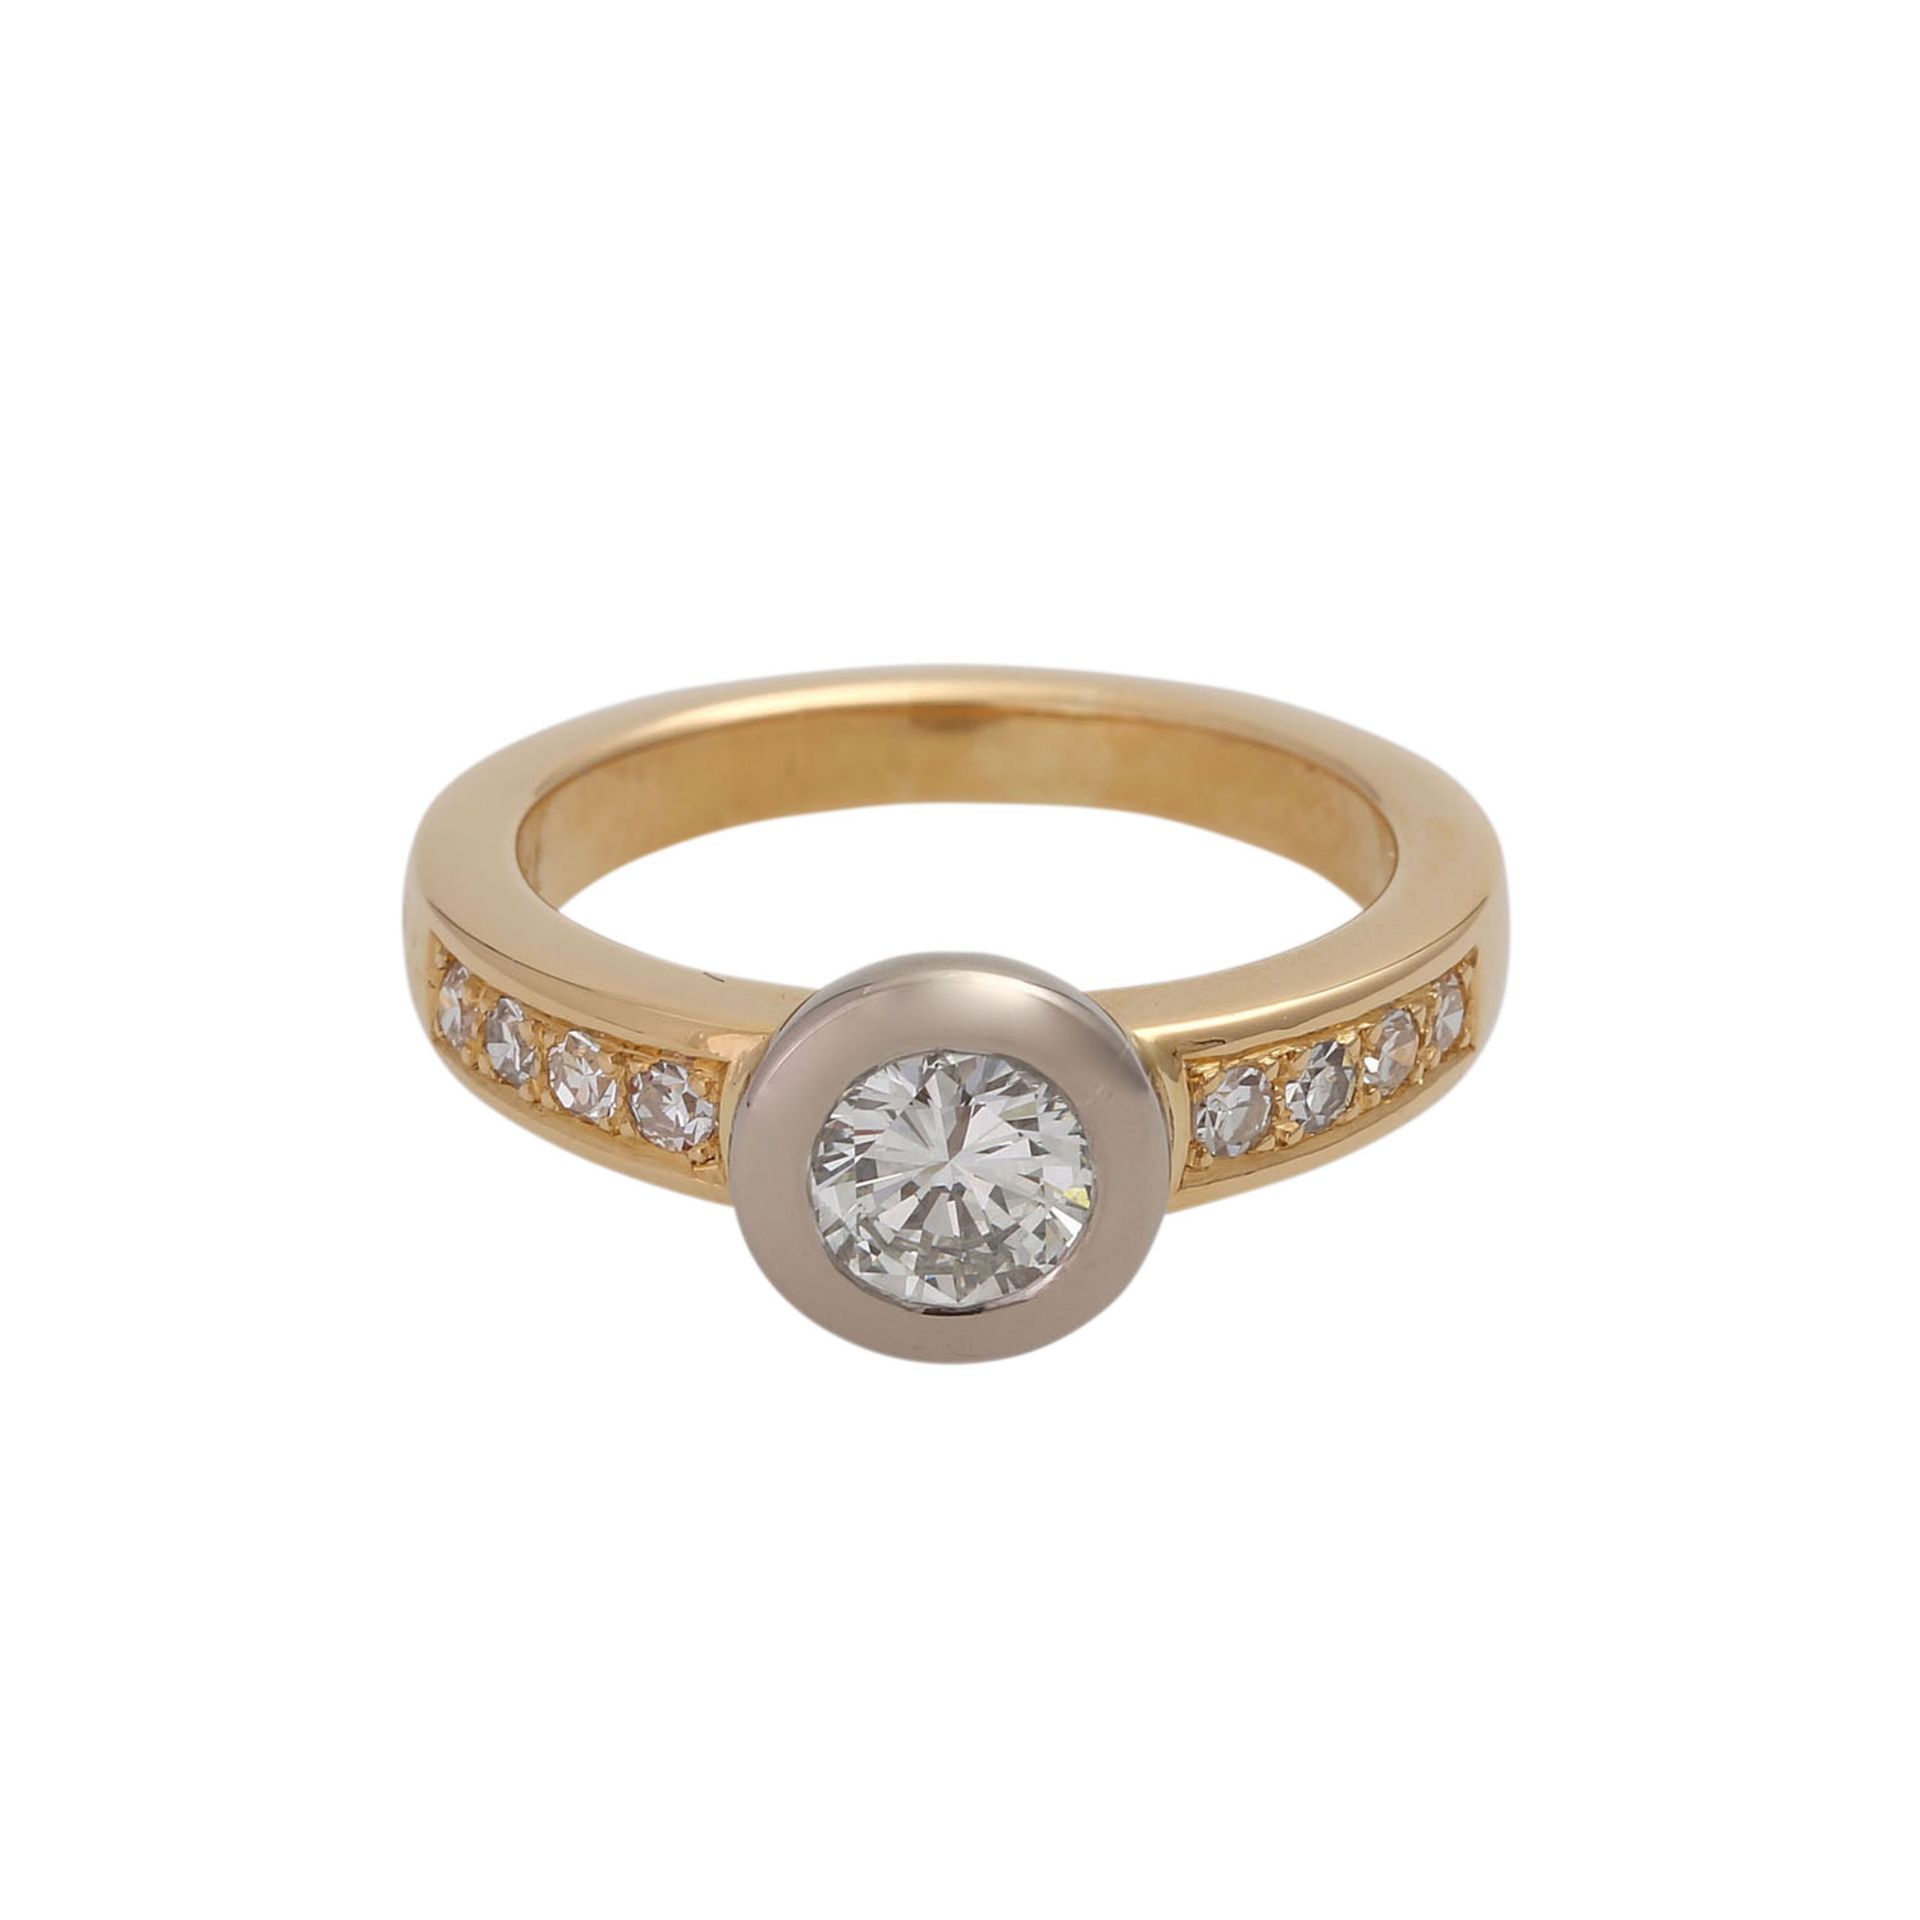 Ring mit Brillant ca. 0,75 ct,LGW (J)/VVS, weitere Diamanten zus. ca. 0,10 ct, gute Farbe u.